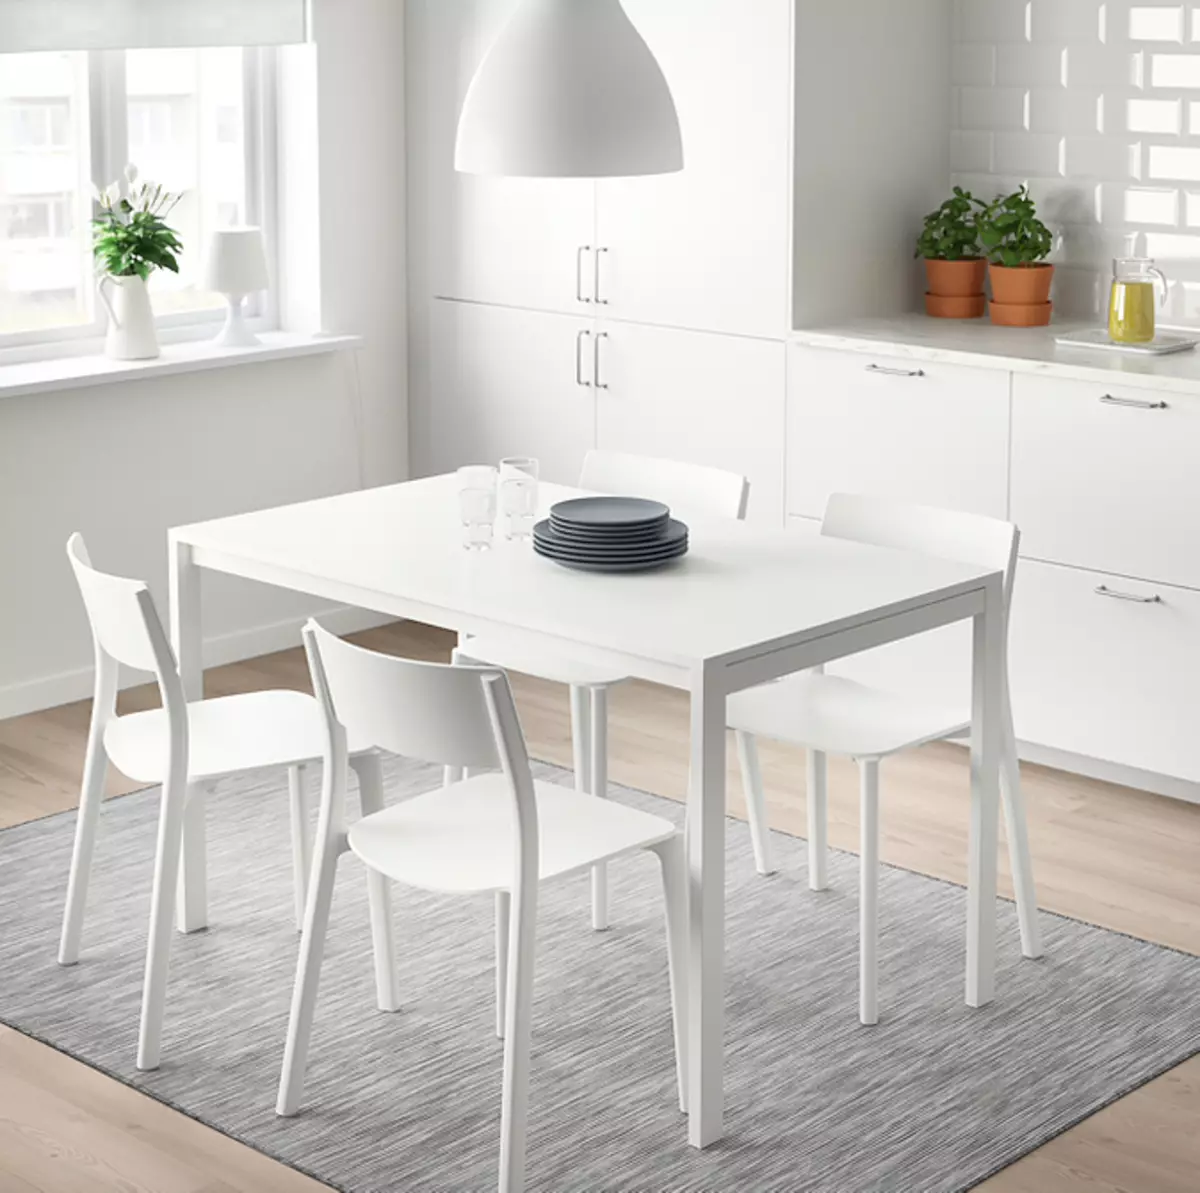 Mobiliário barato, mas elegante da IKEA: 9 produtos até 3 000 rublos 8289_52